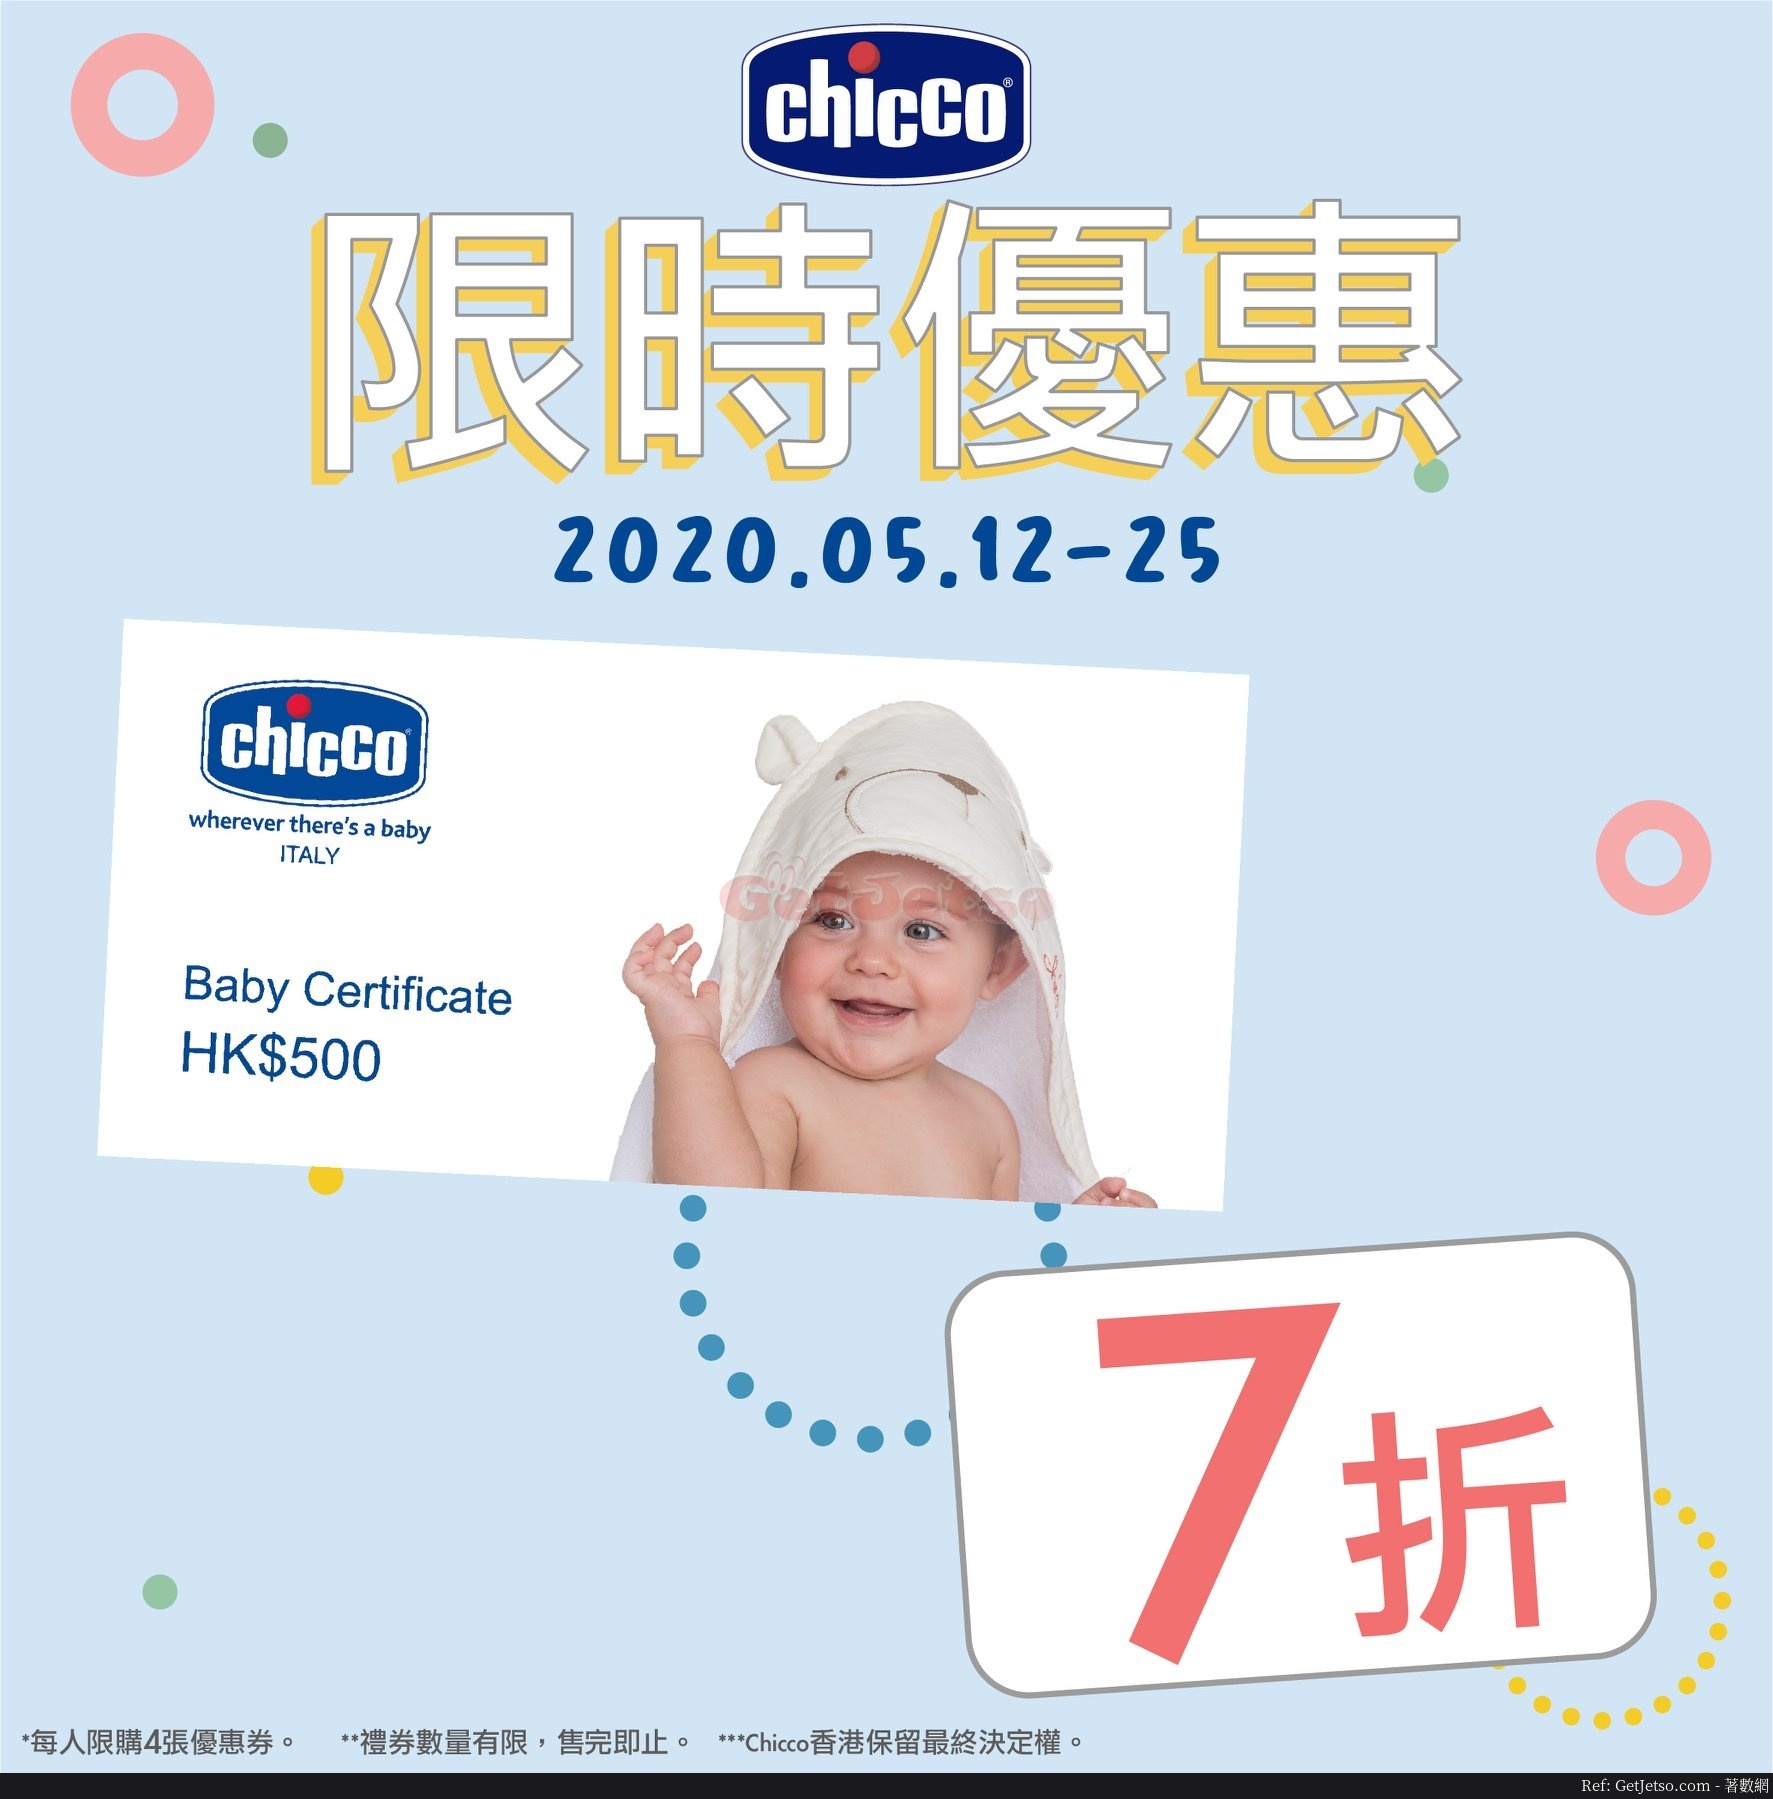 CHICCO 7折購買價值0優惠券優惠(至20年5月25日)圖片1